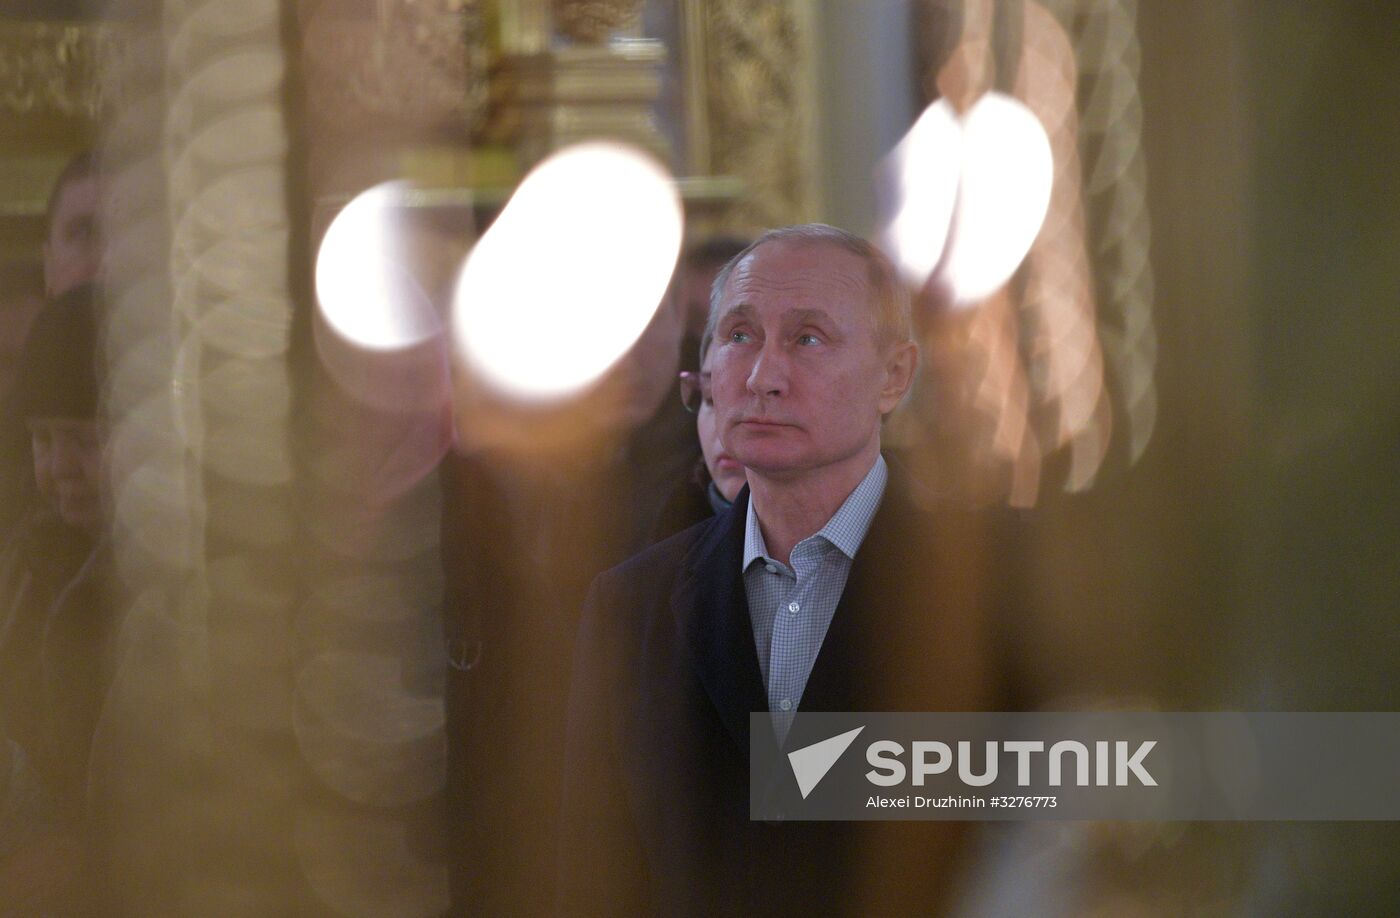 President Vladimir Putin takes part in Epiphany bathing on Lake Seliger